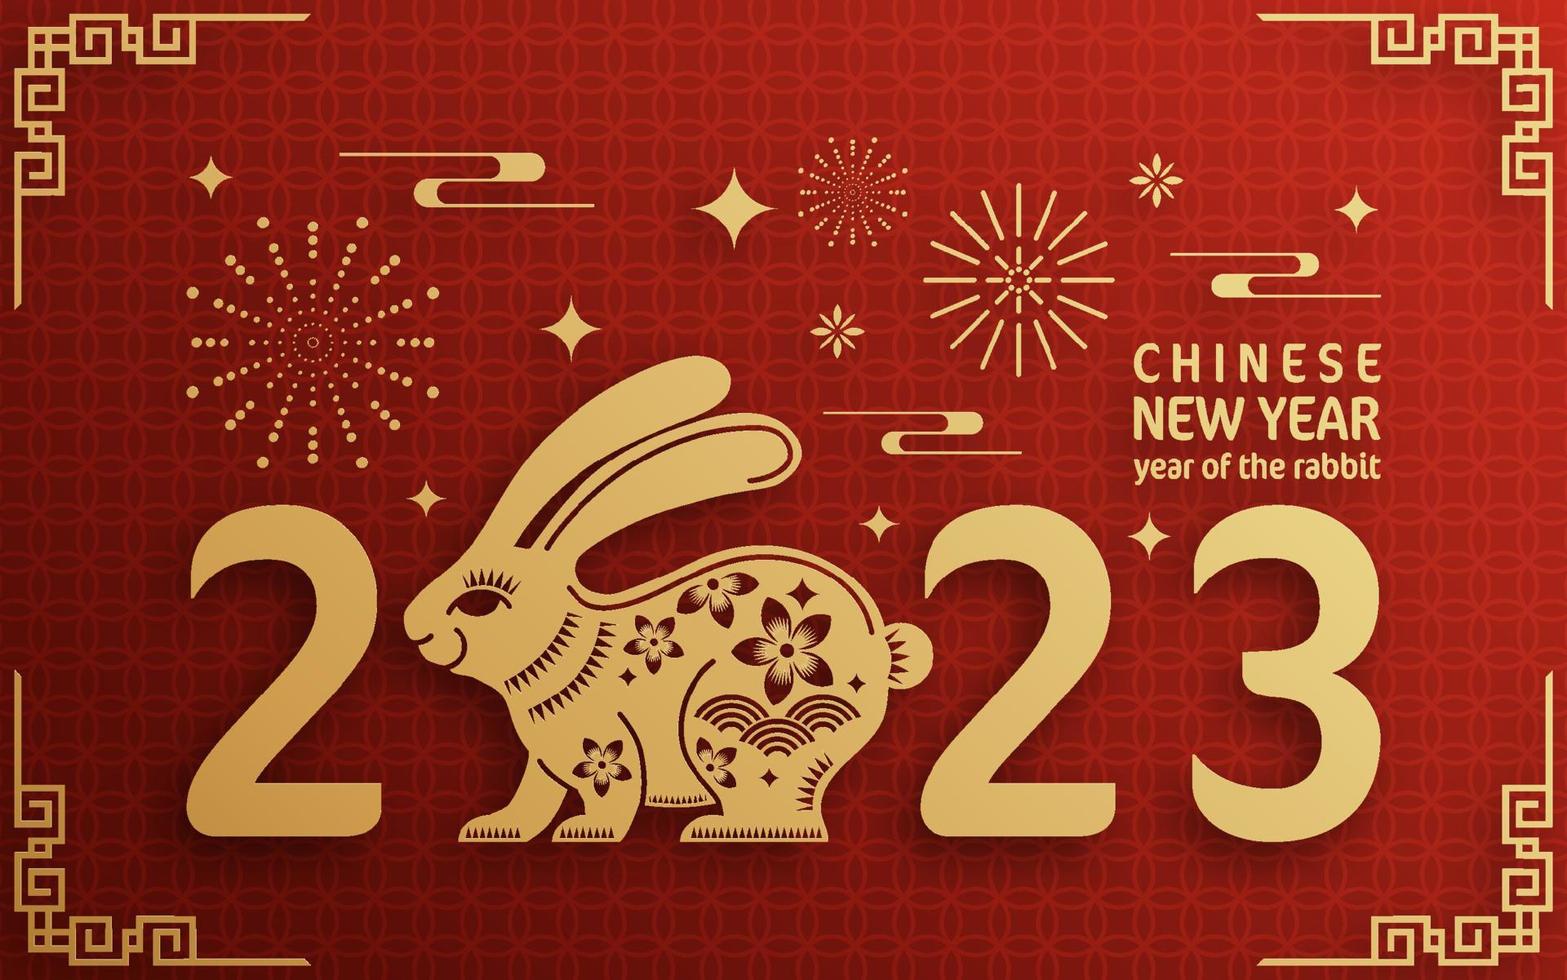 frohes chinesisches neujahr 2023 jahr des hasentierkreises vektor